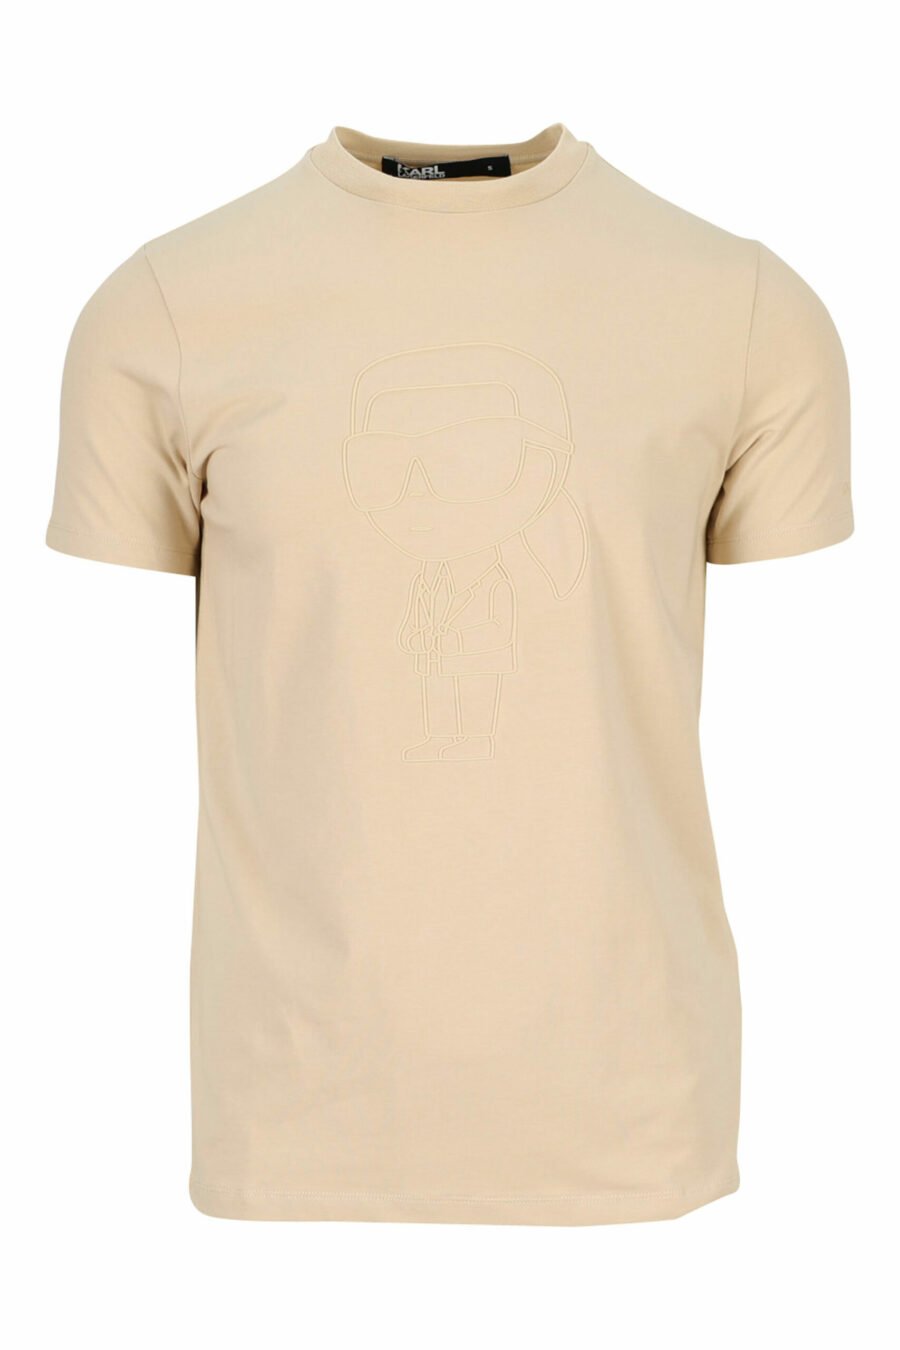 Camiseta beige con maxilogo monocromático de goma - 4062226401340 scaled